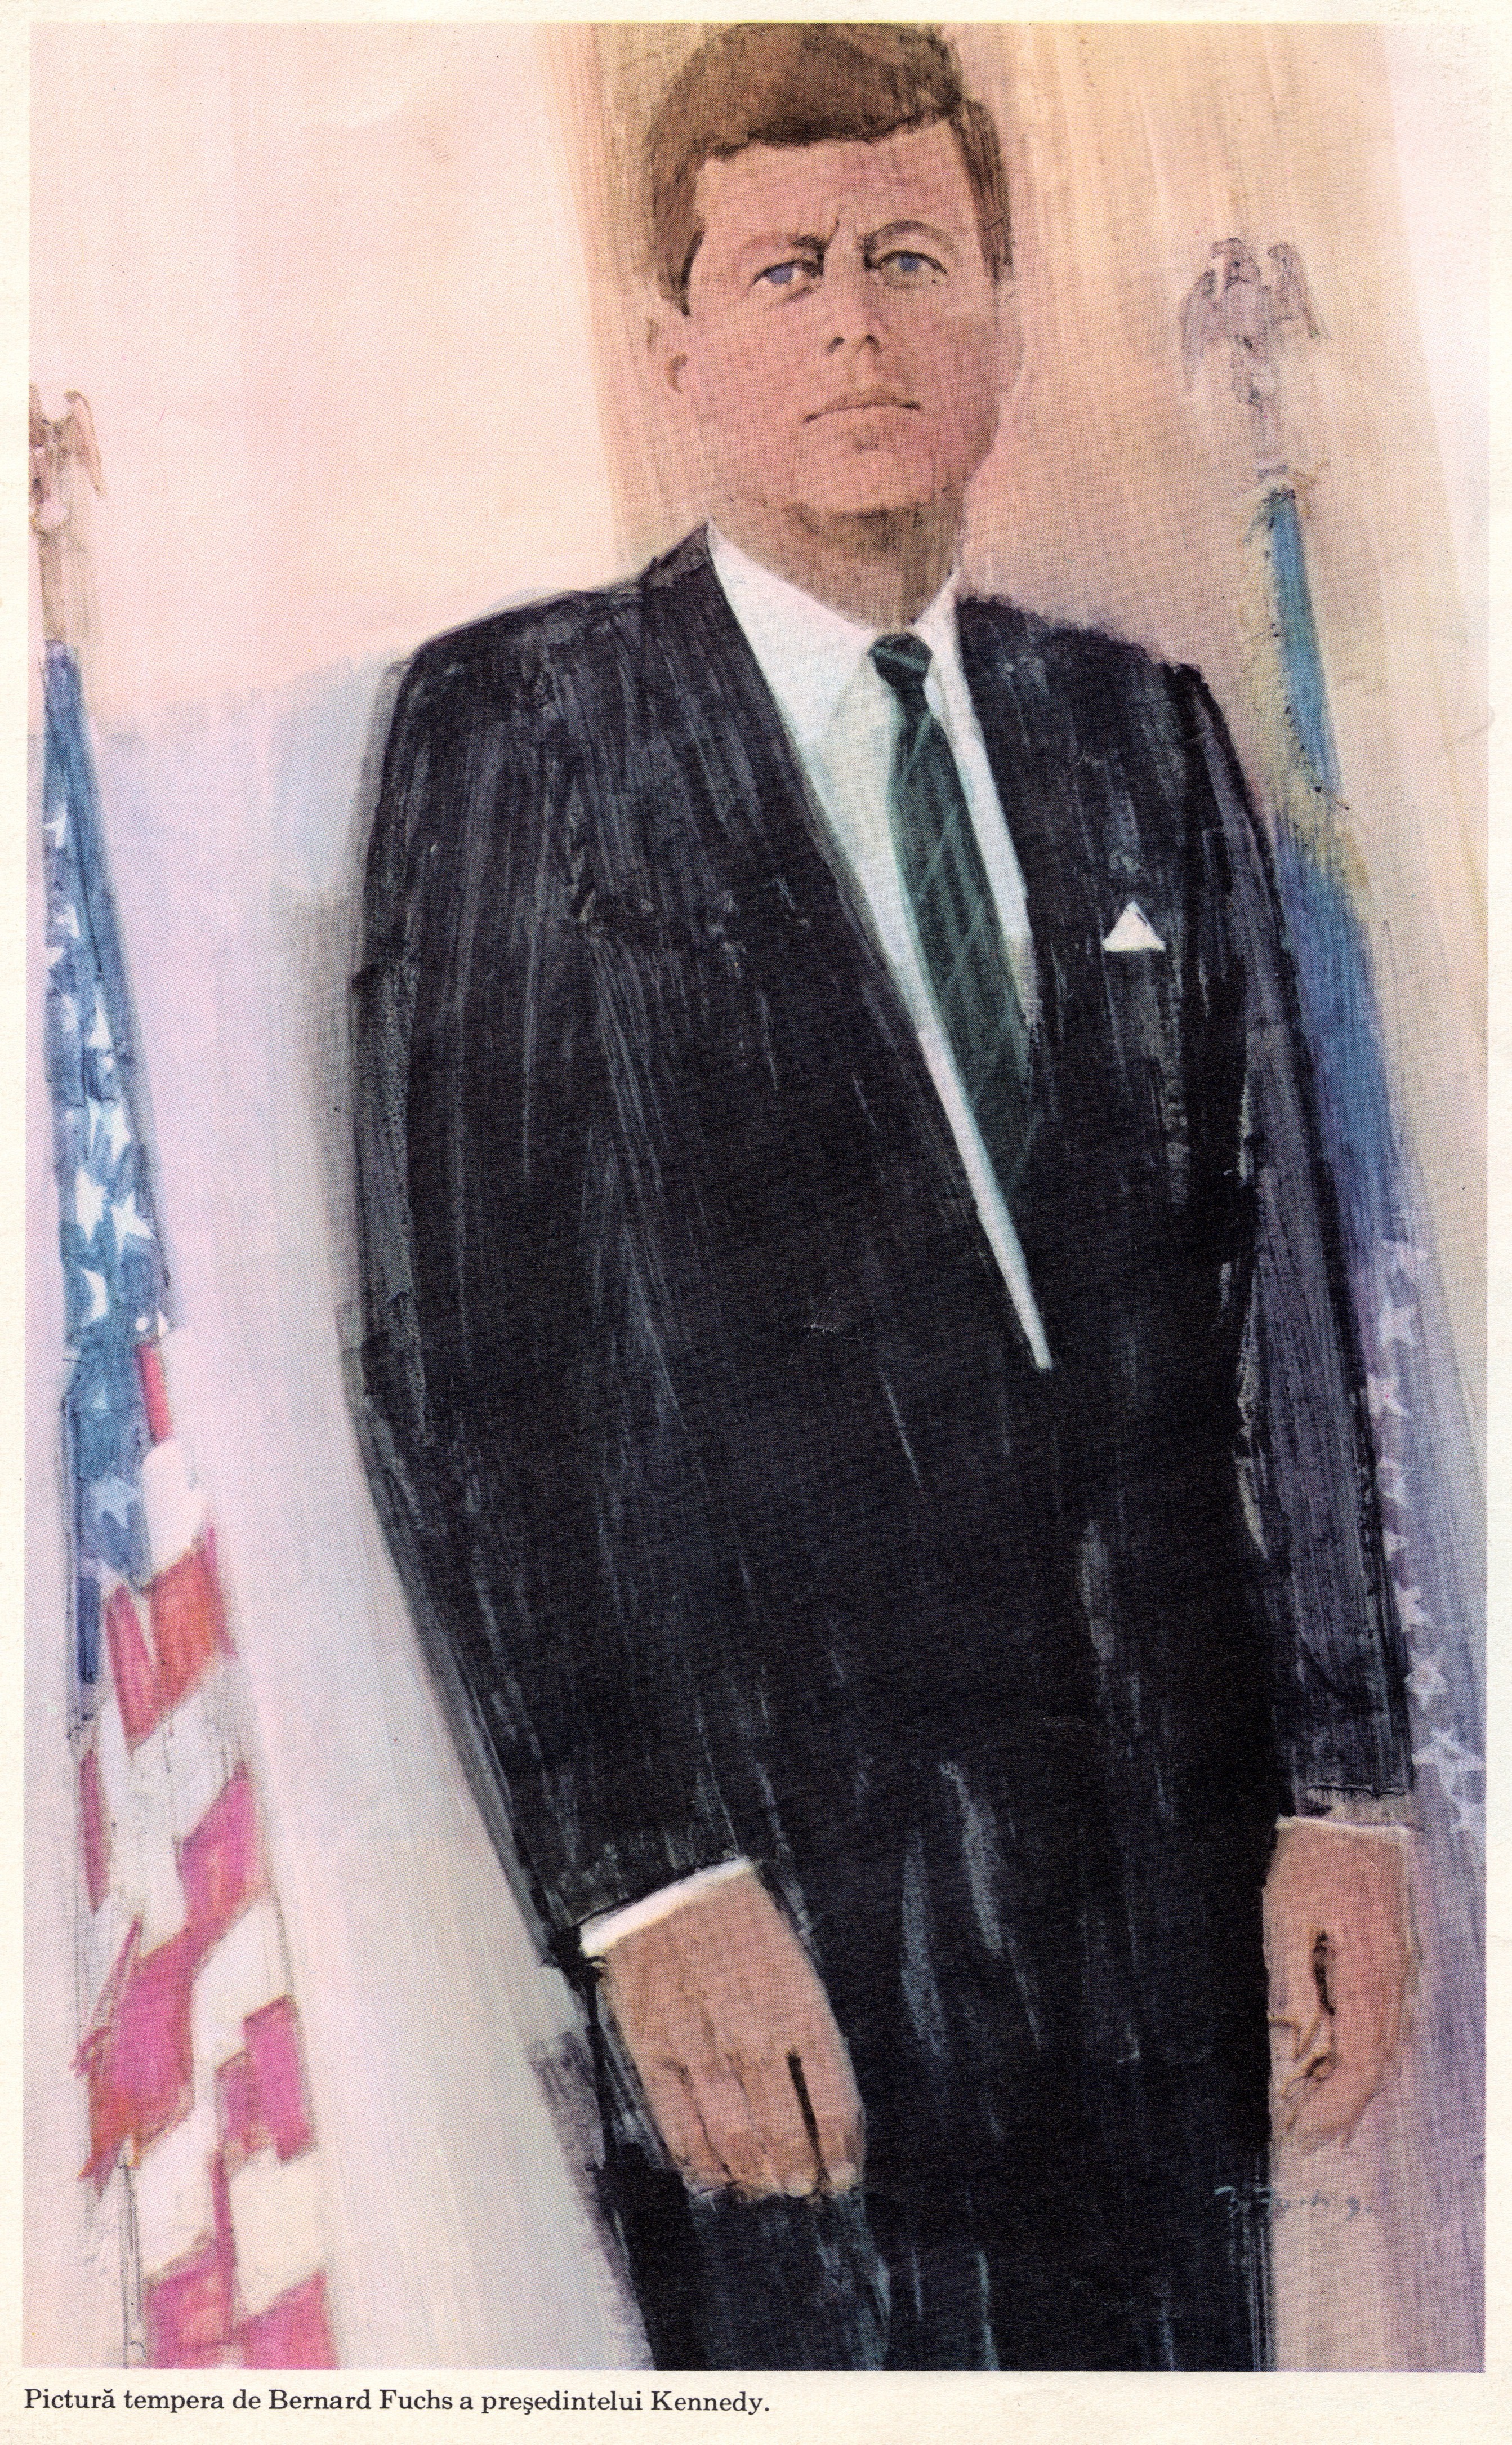 Biografii comentate (IV). John Fitzgerald Kennedy sau politicianul cu două feţe/ de Călin Hentea